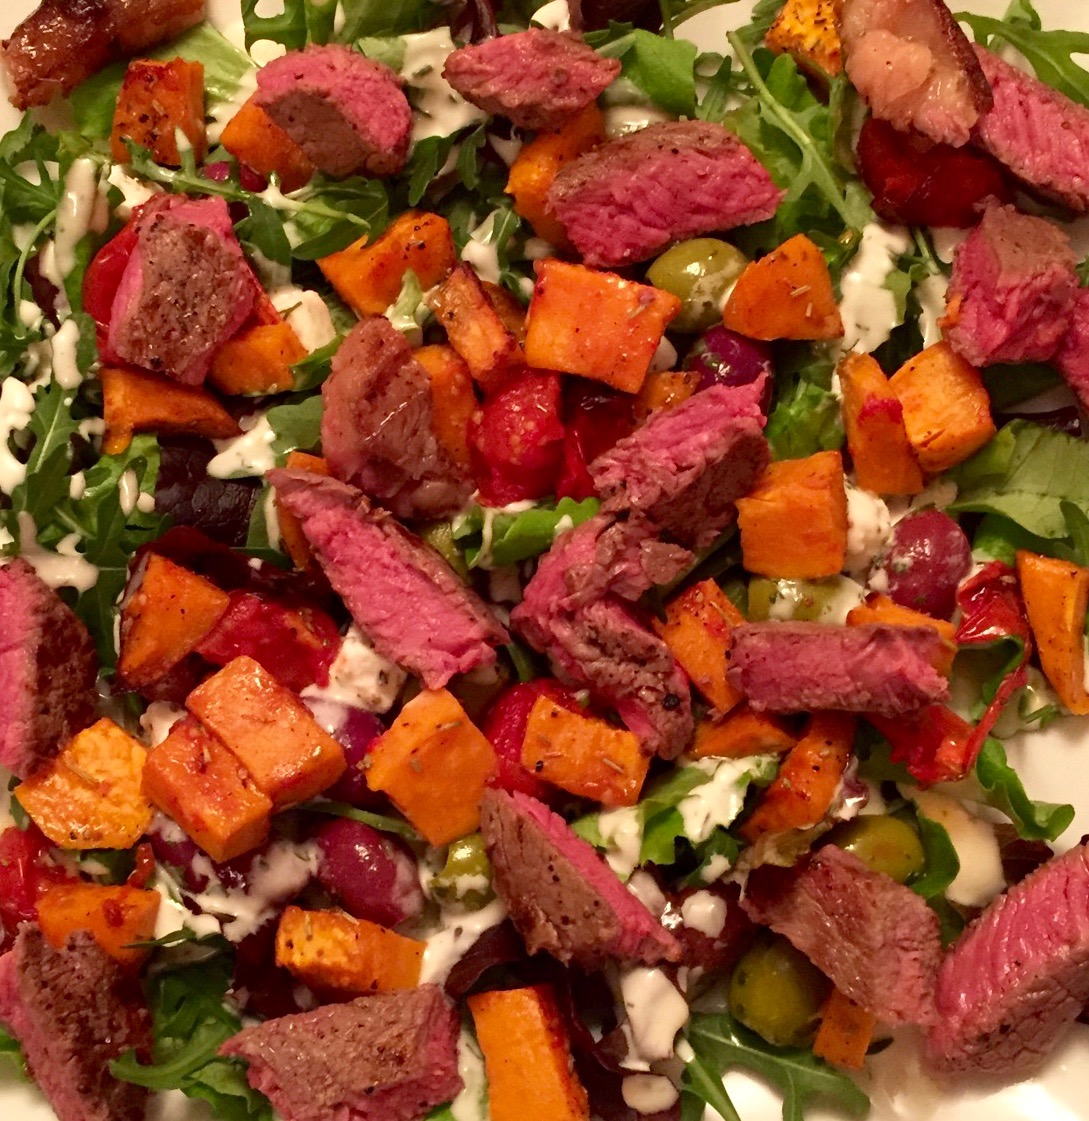 Recipe of the week - Mediterranean Steak Salad